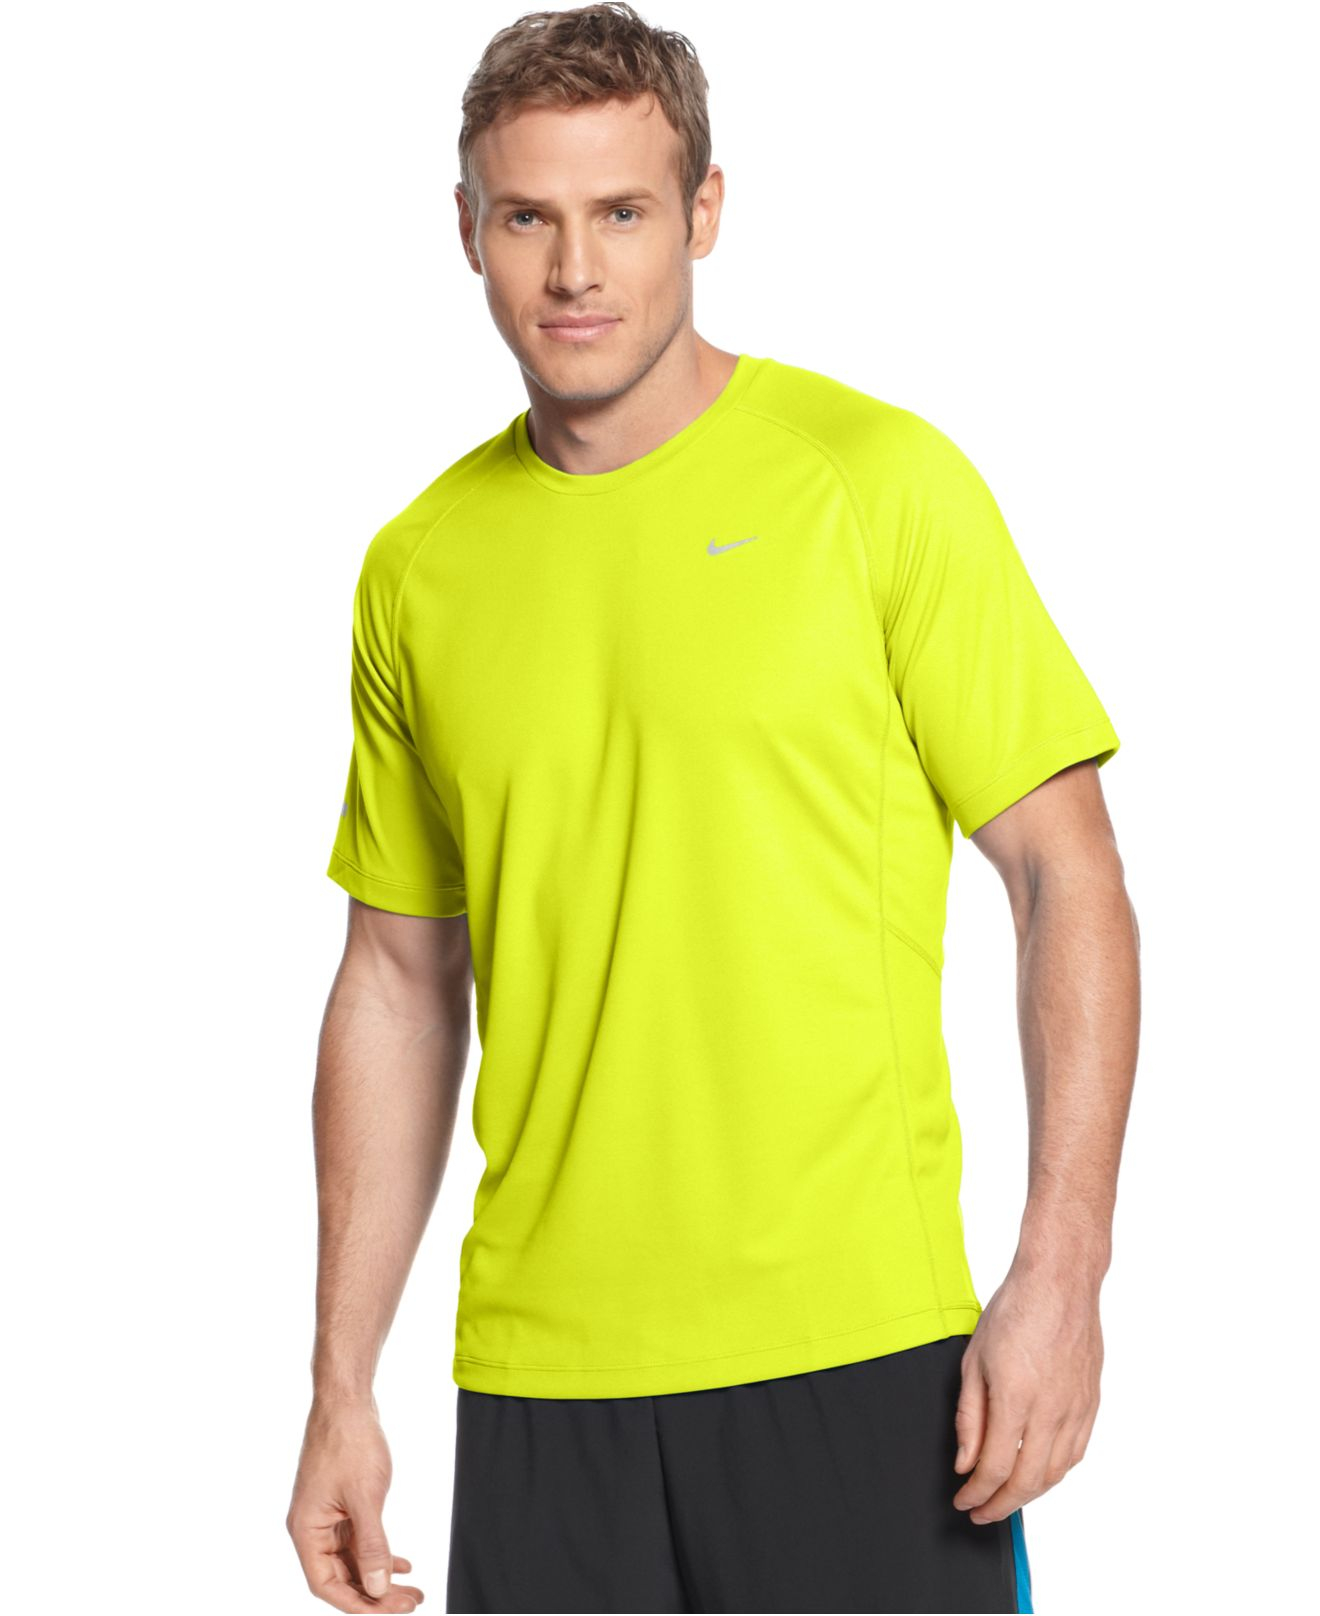 Lyst - Nike Miler Short Sleeve Uv Running T-shirt in Yellow for Men